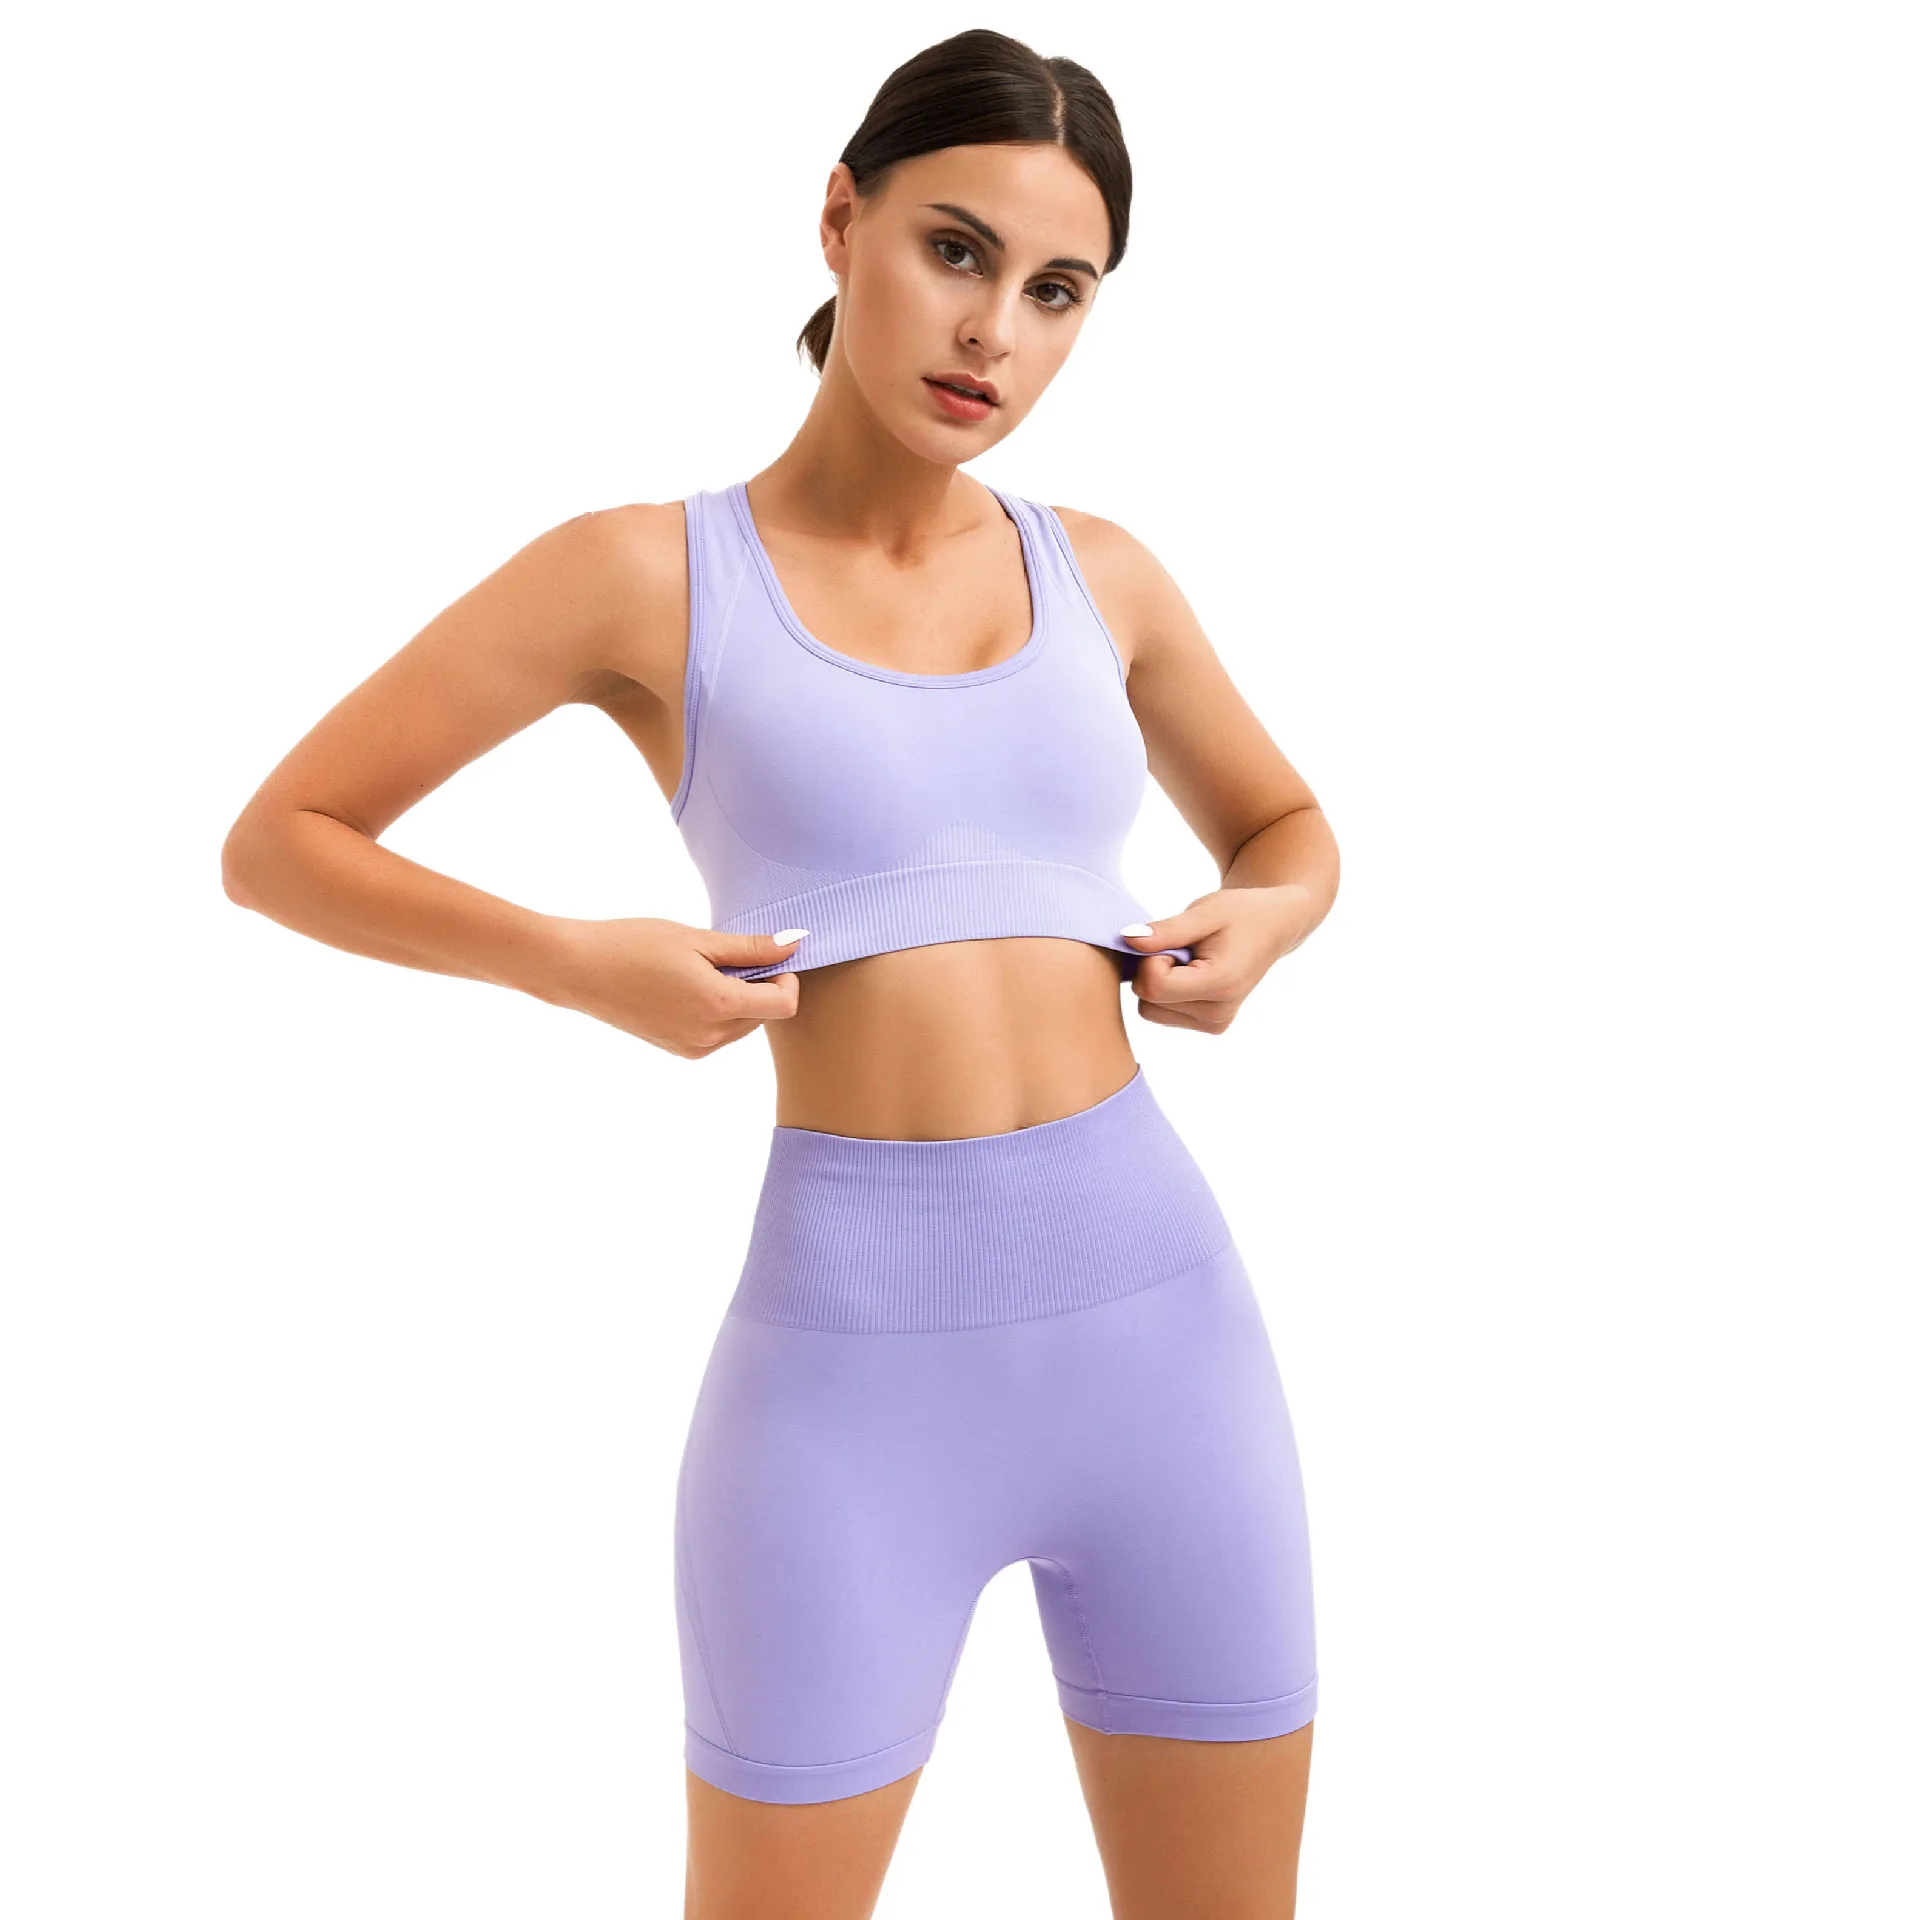  WXBDD Conjuntos de ropa de yoga Mujer Fitness Deportes